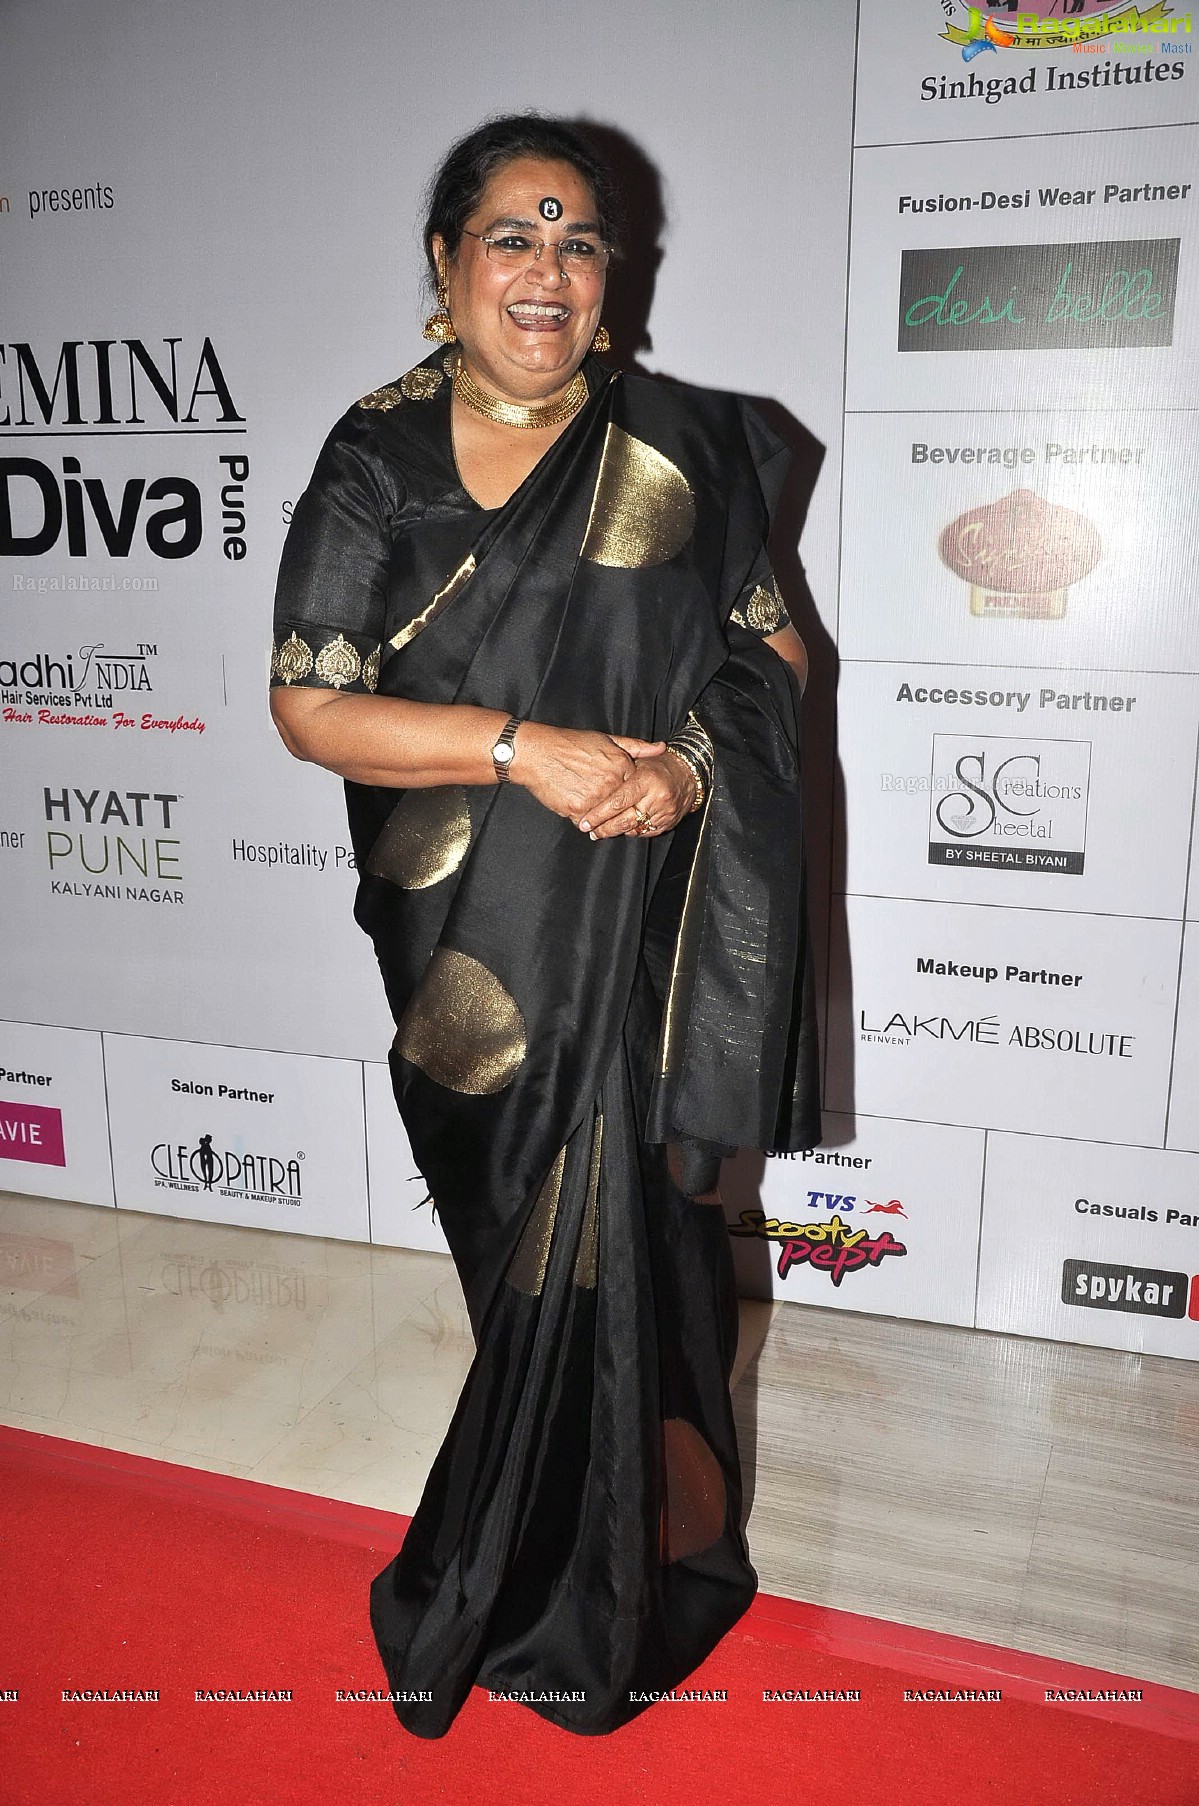 Femina Style Diva Pune 2013 (Set 1)